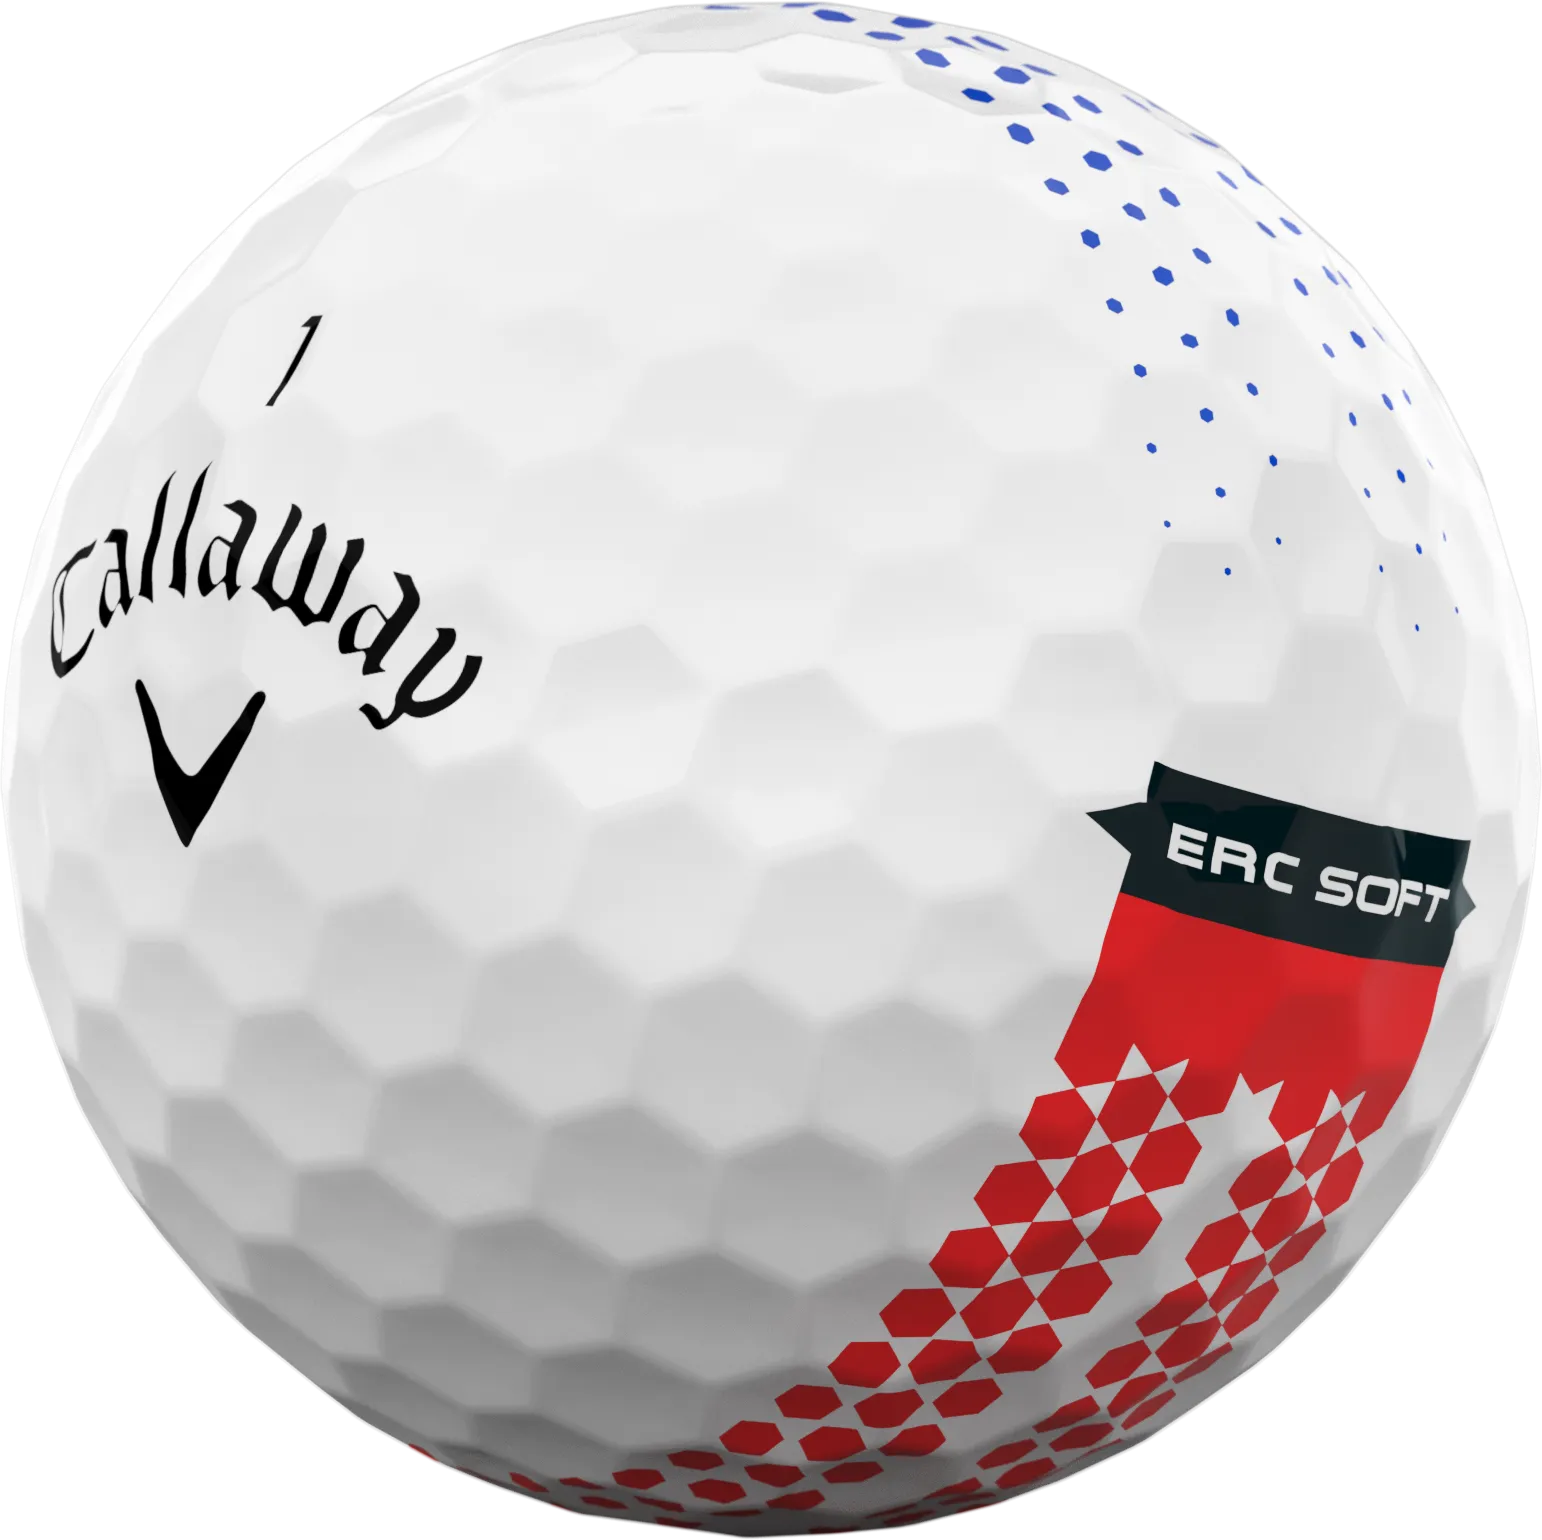 Callaway E.R.C Soft Fade 360 Golfbälle, weiß